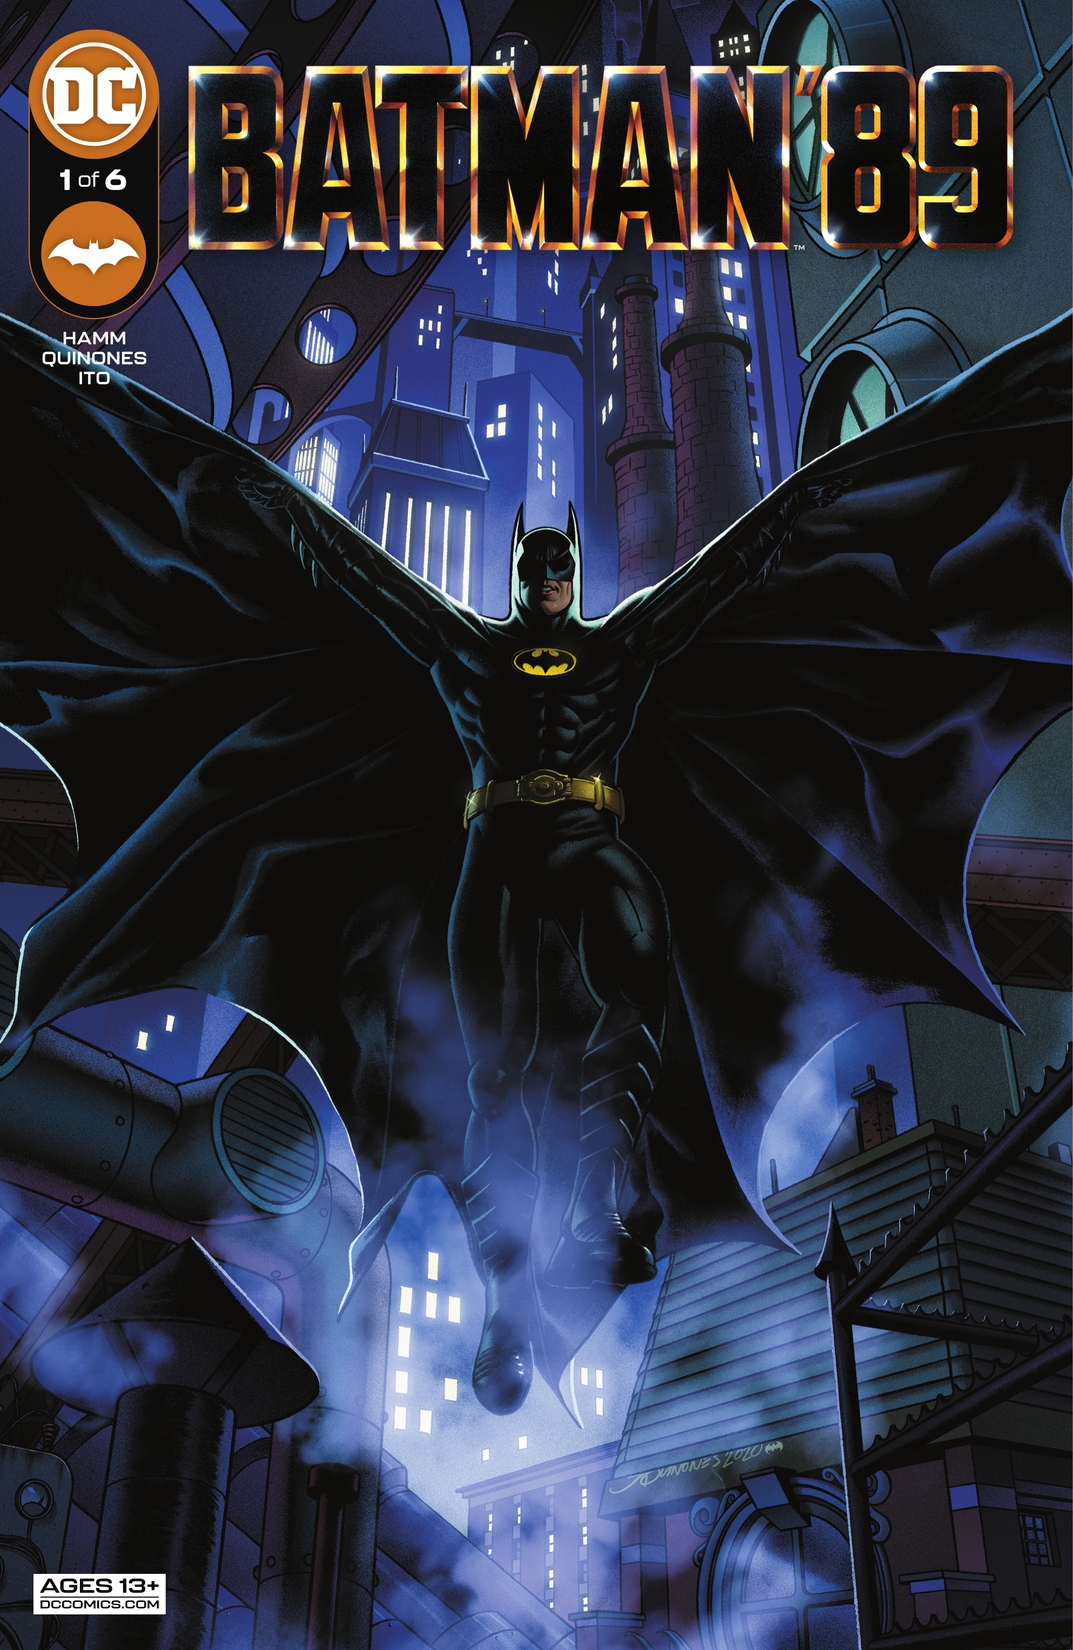 Batman '89 #1 preview images